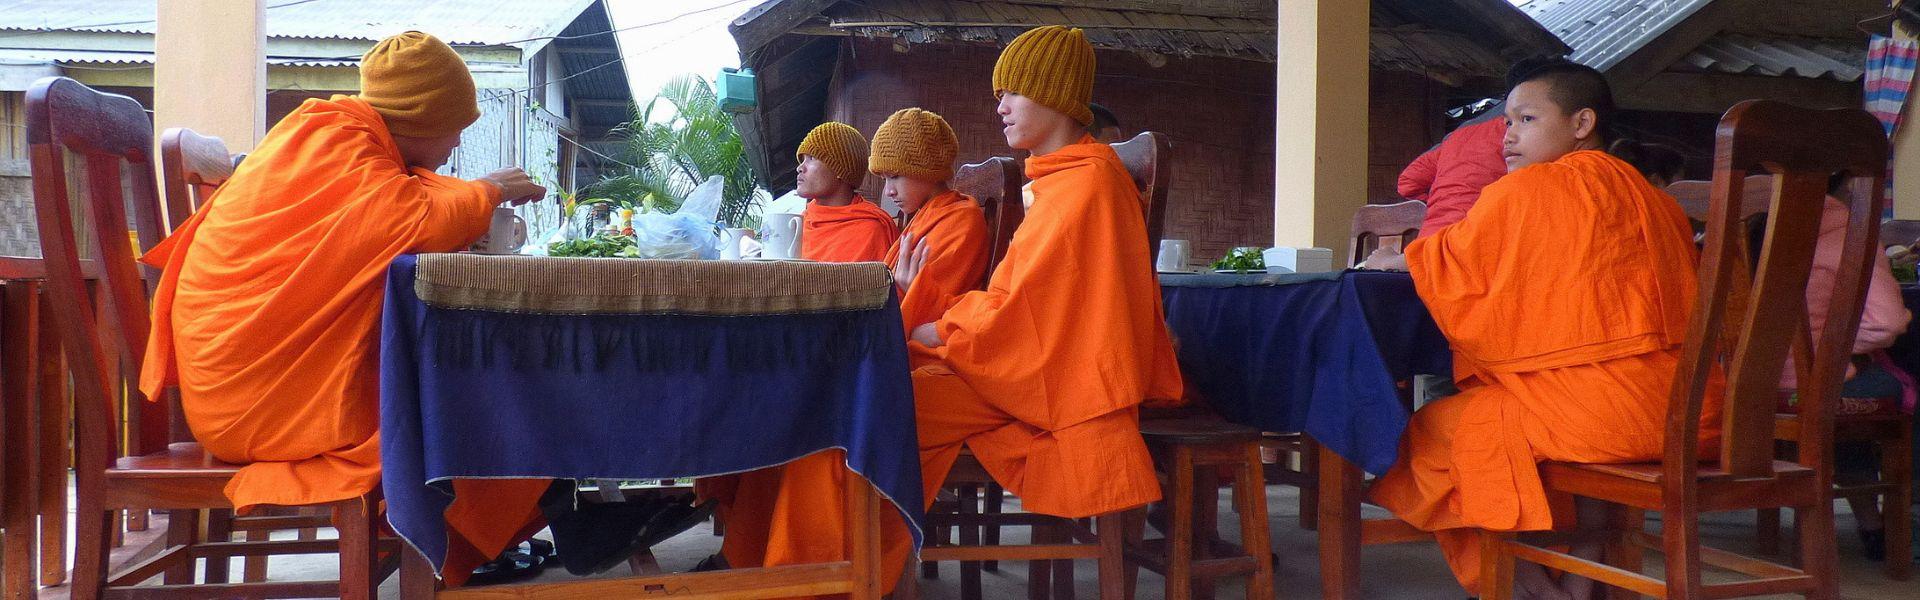 Voyage Huay Xai - un point d’embarquement idéal pour rejoindre Luang Prabang